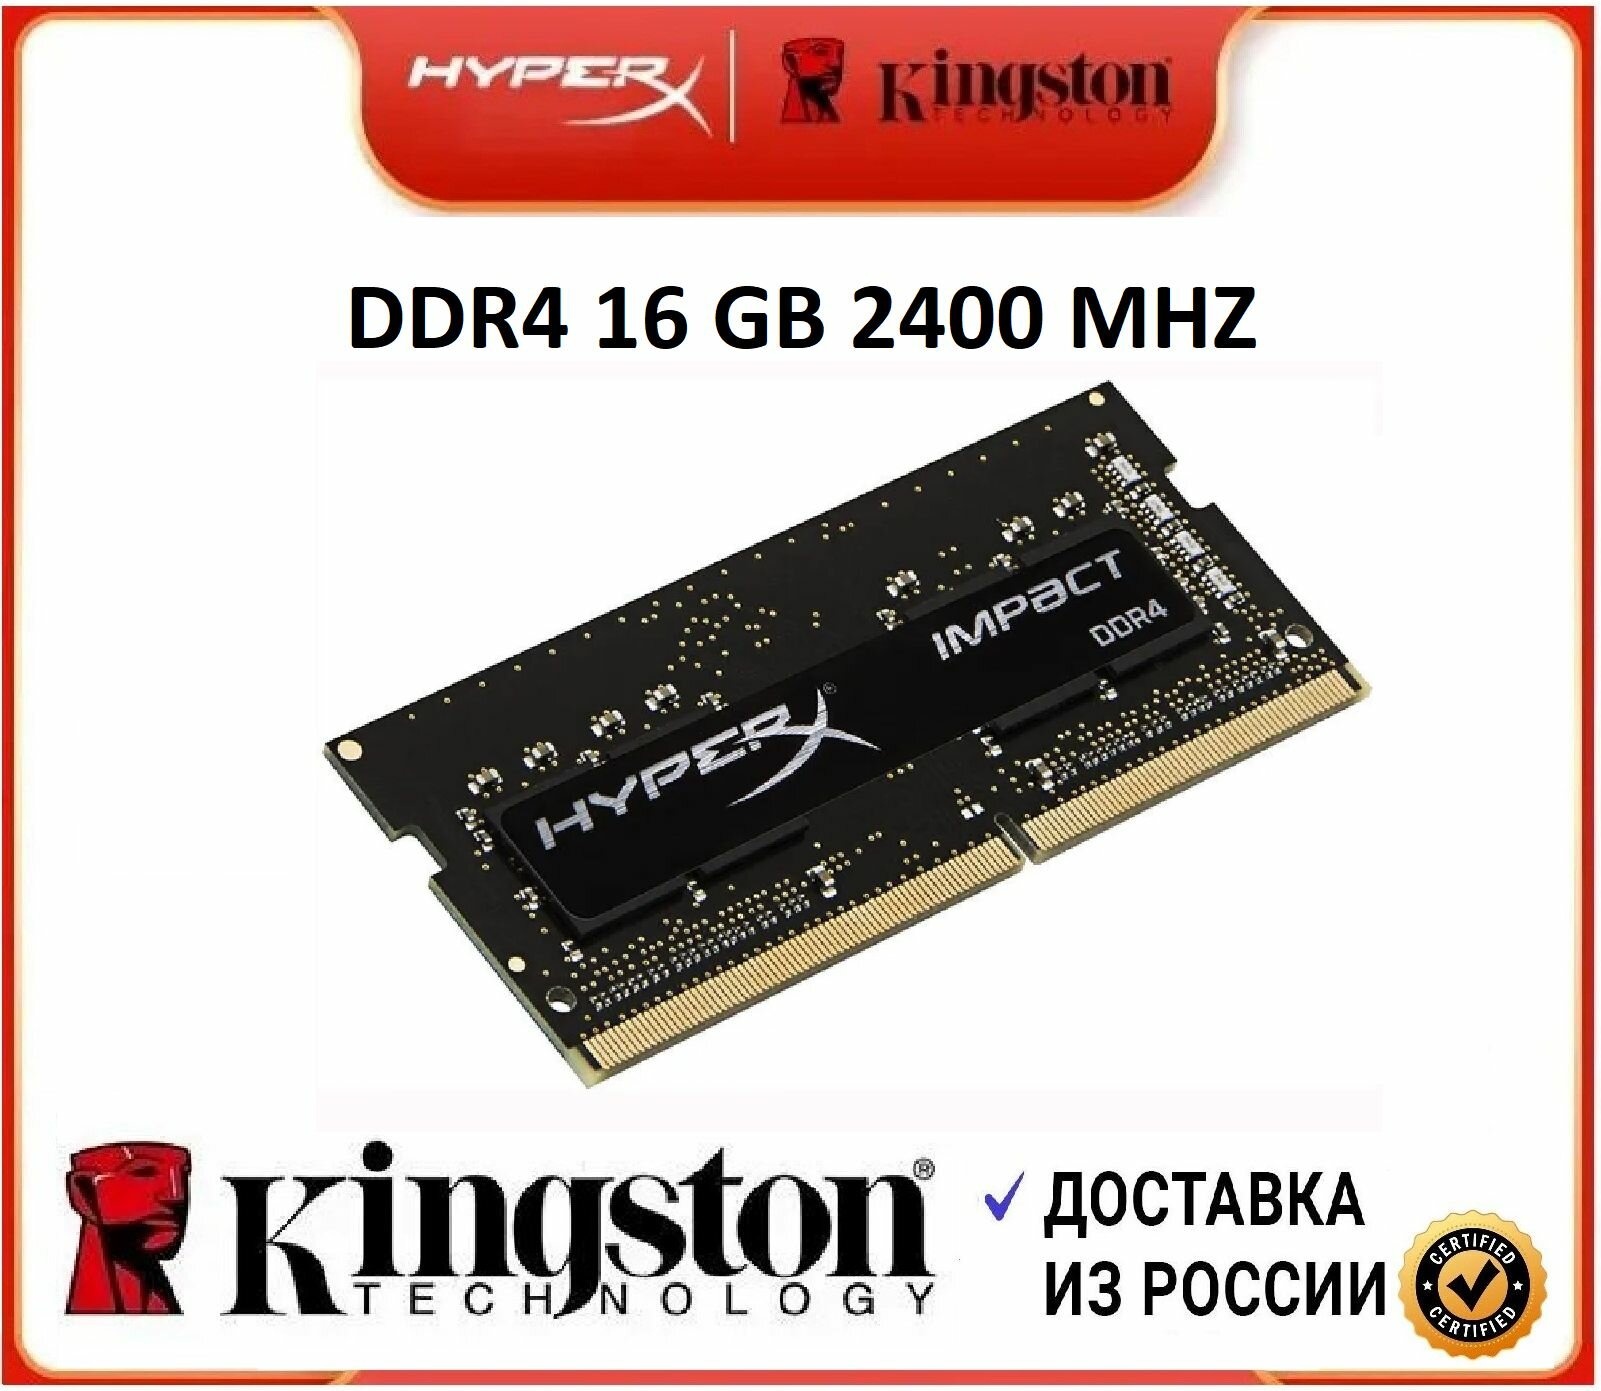 Оперативная память HyperX Kingston DDR4 16GB 2400MHz Laptop 1x16 ГБ (HX424S14IB/16)